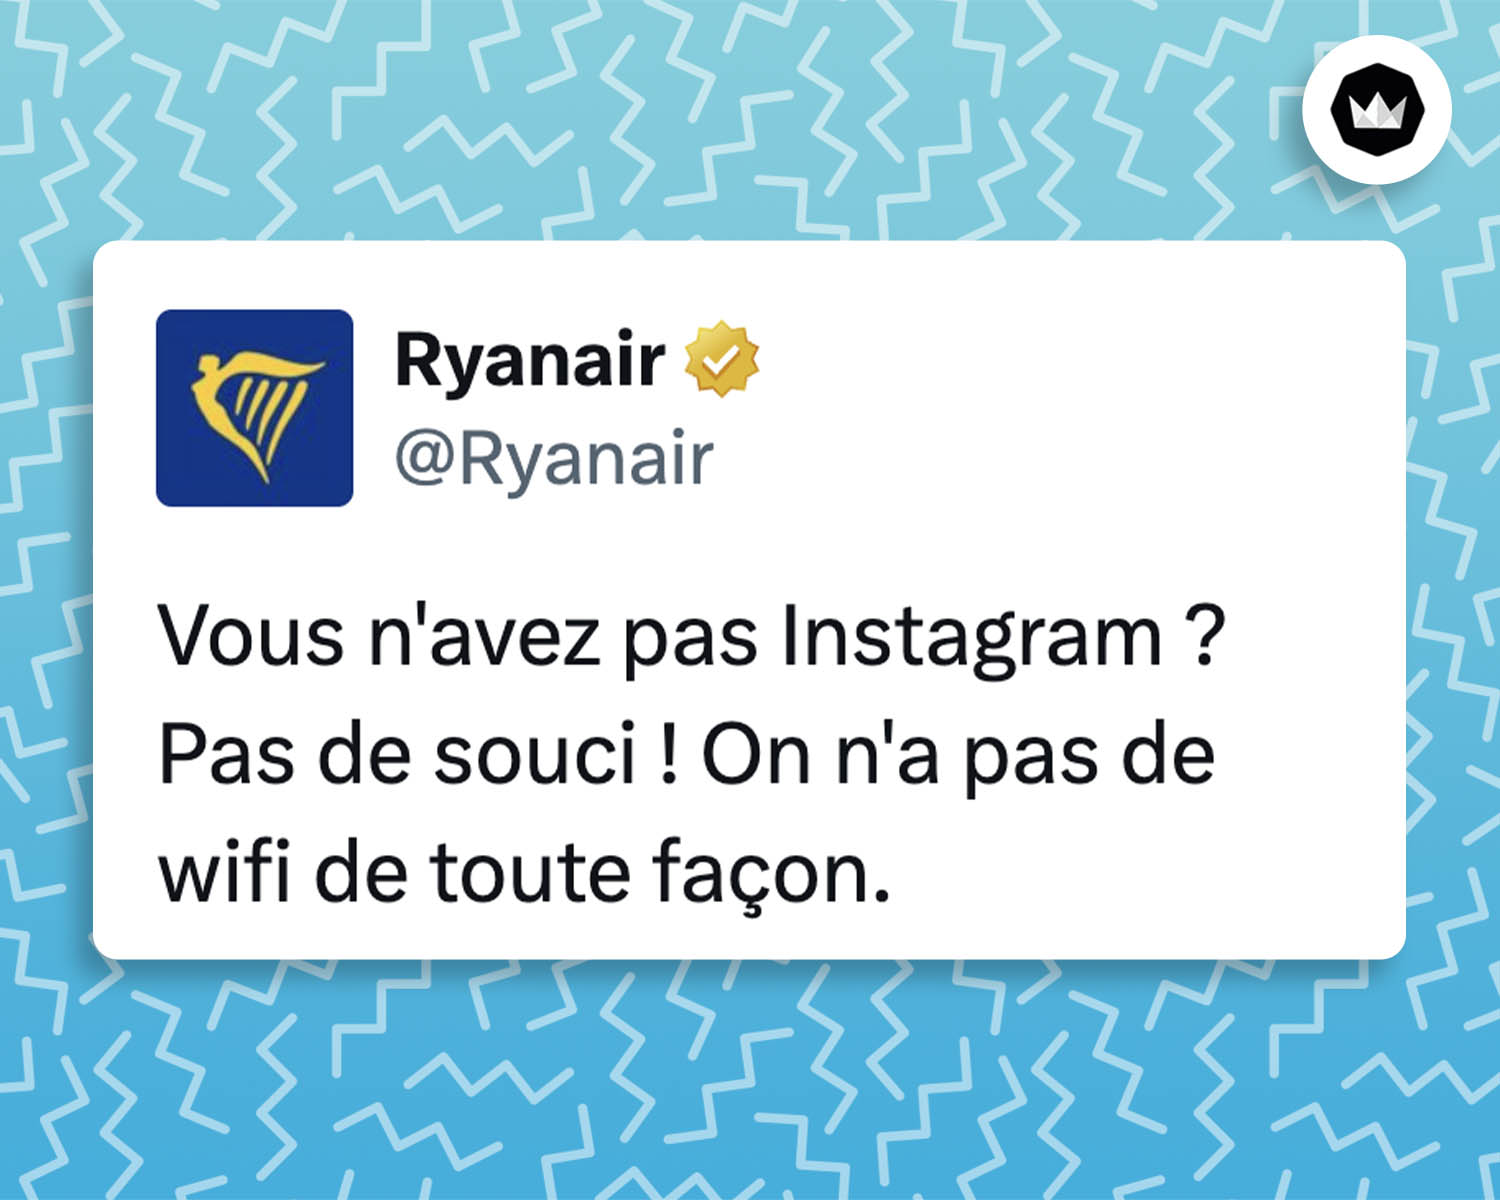 @Ryanair
Vous n'avez pas Instagram ? Pas de souci ! On n'a pas de wifi de toute façon. 